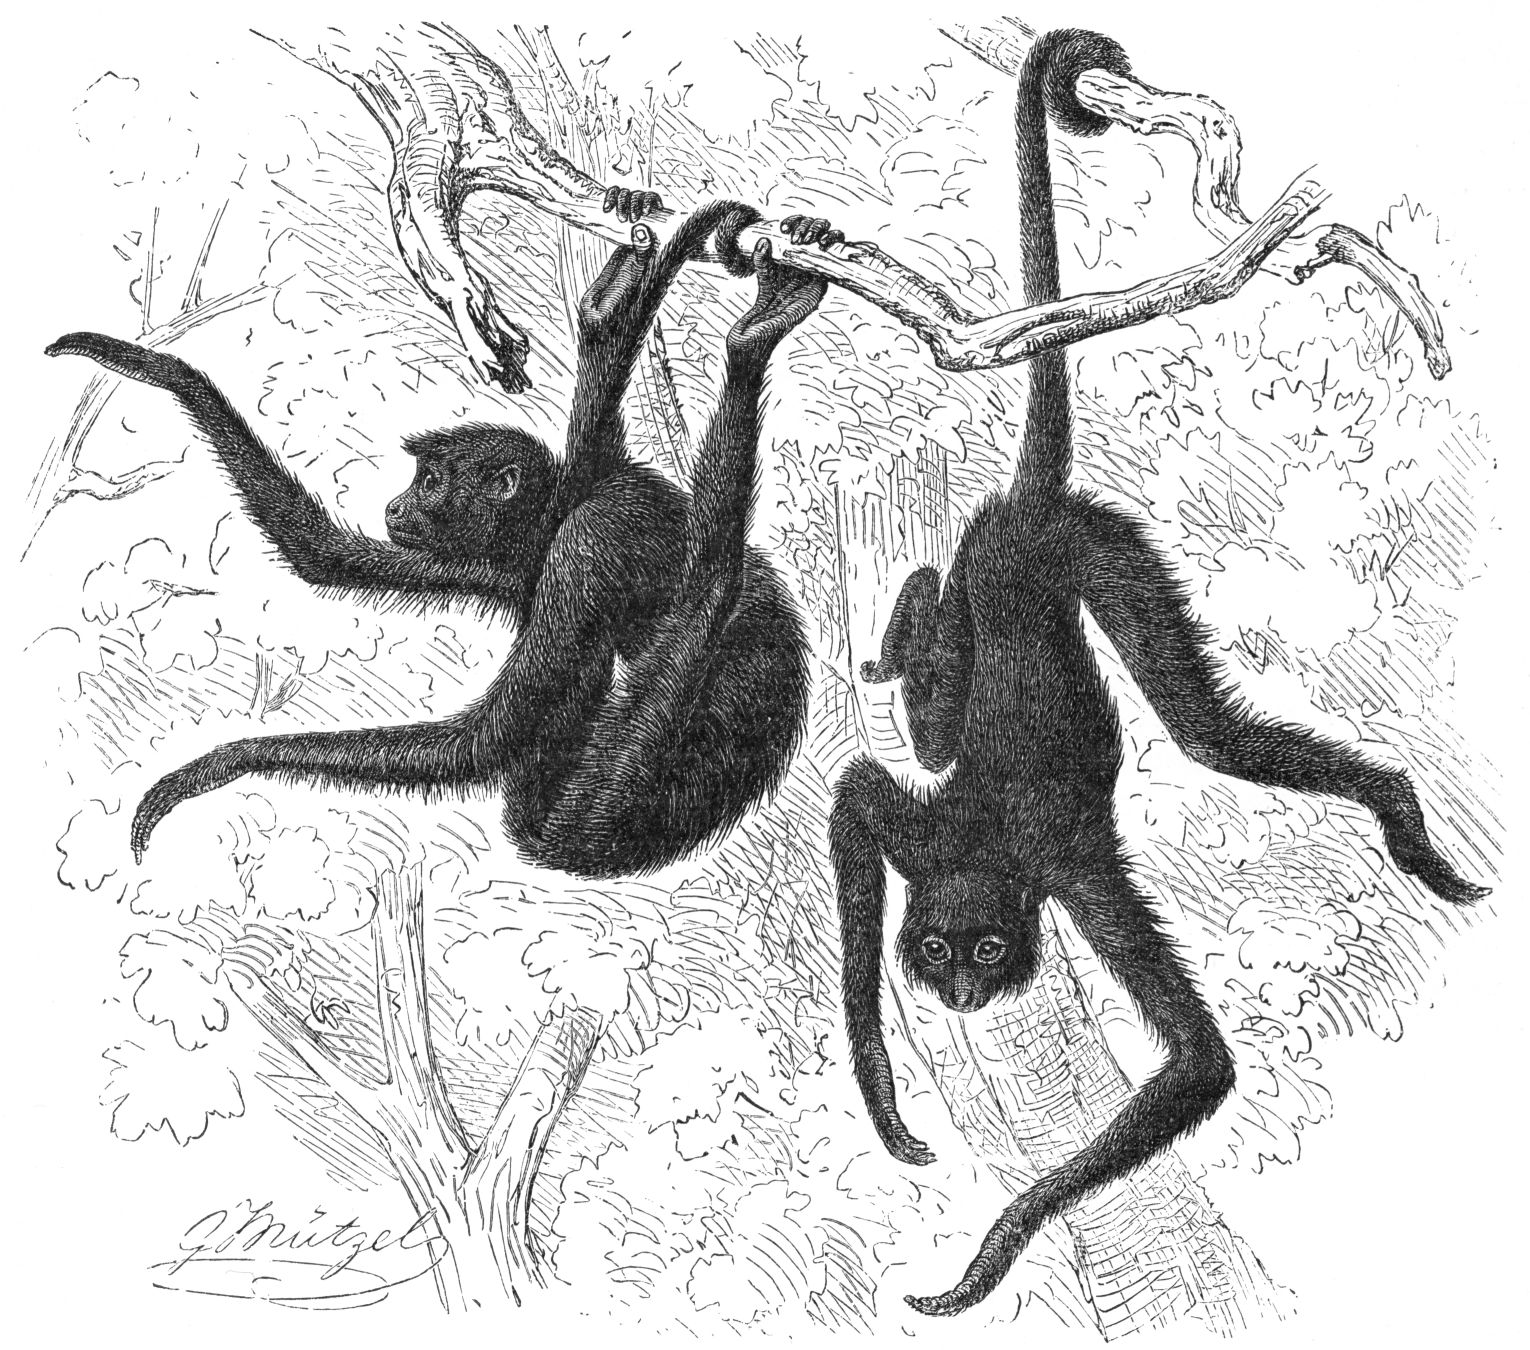 Gustav Mützel - Spider monkey s (Ateles) use of the prehensile tail. - https://commons.wikimedia.org/wiki/File:Klammeraffe-drawing.jpg